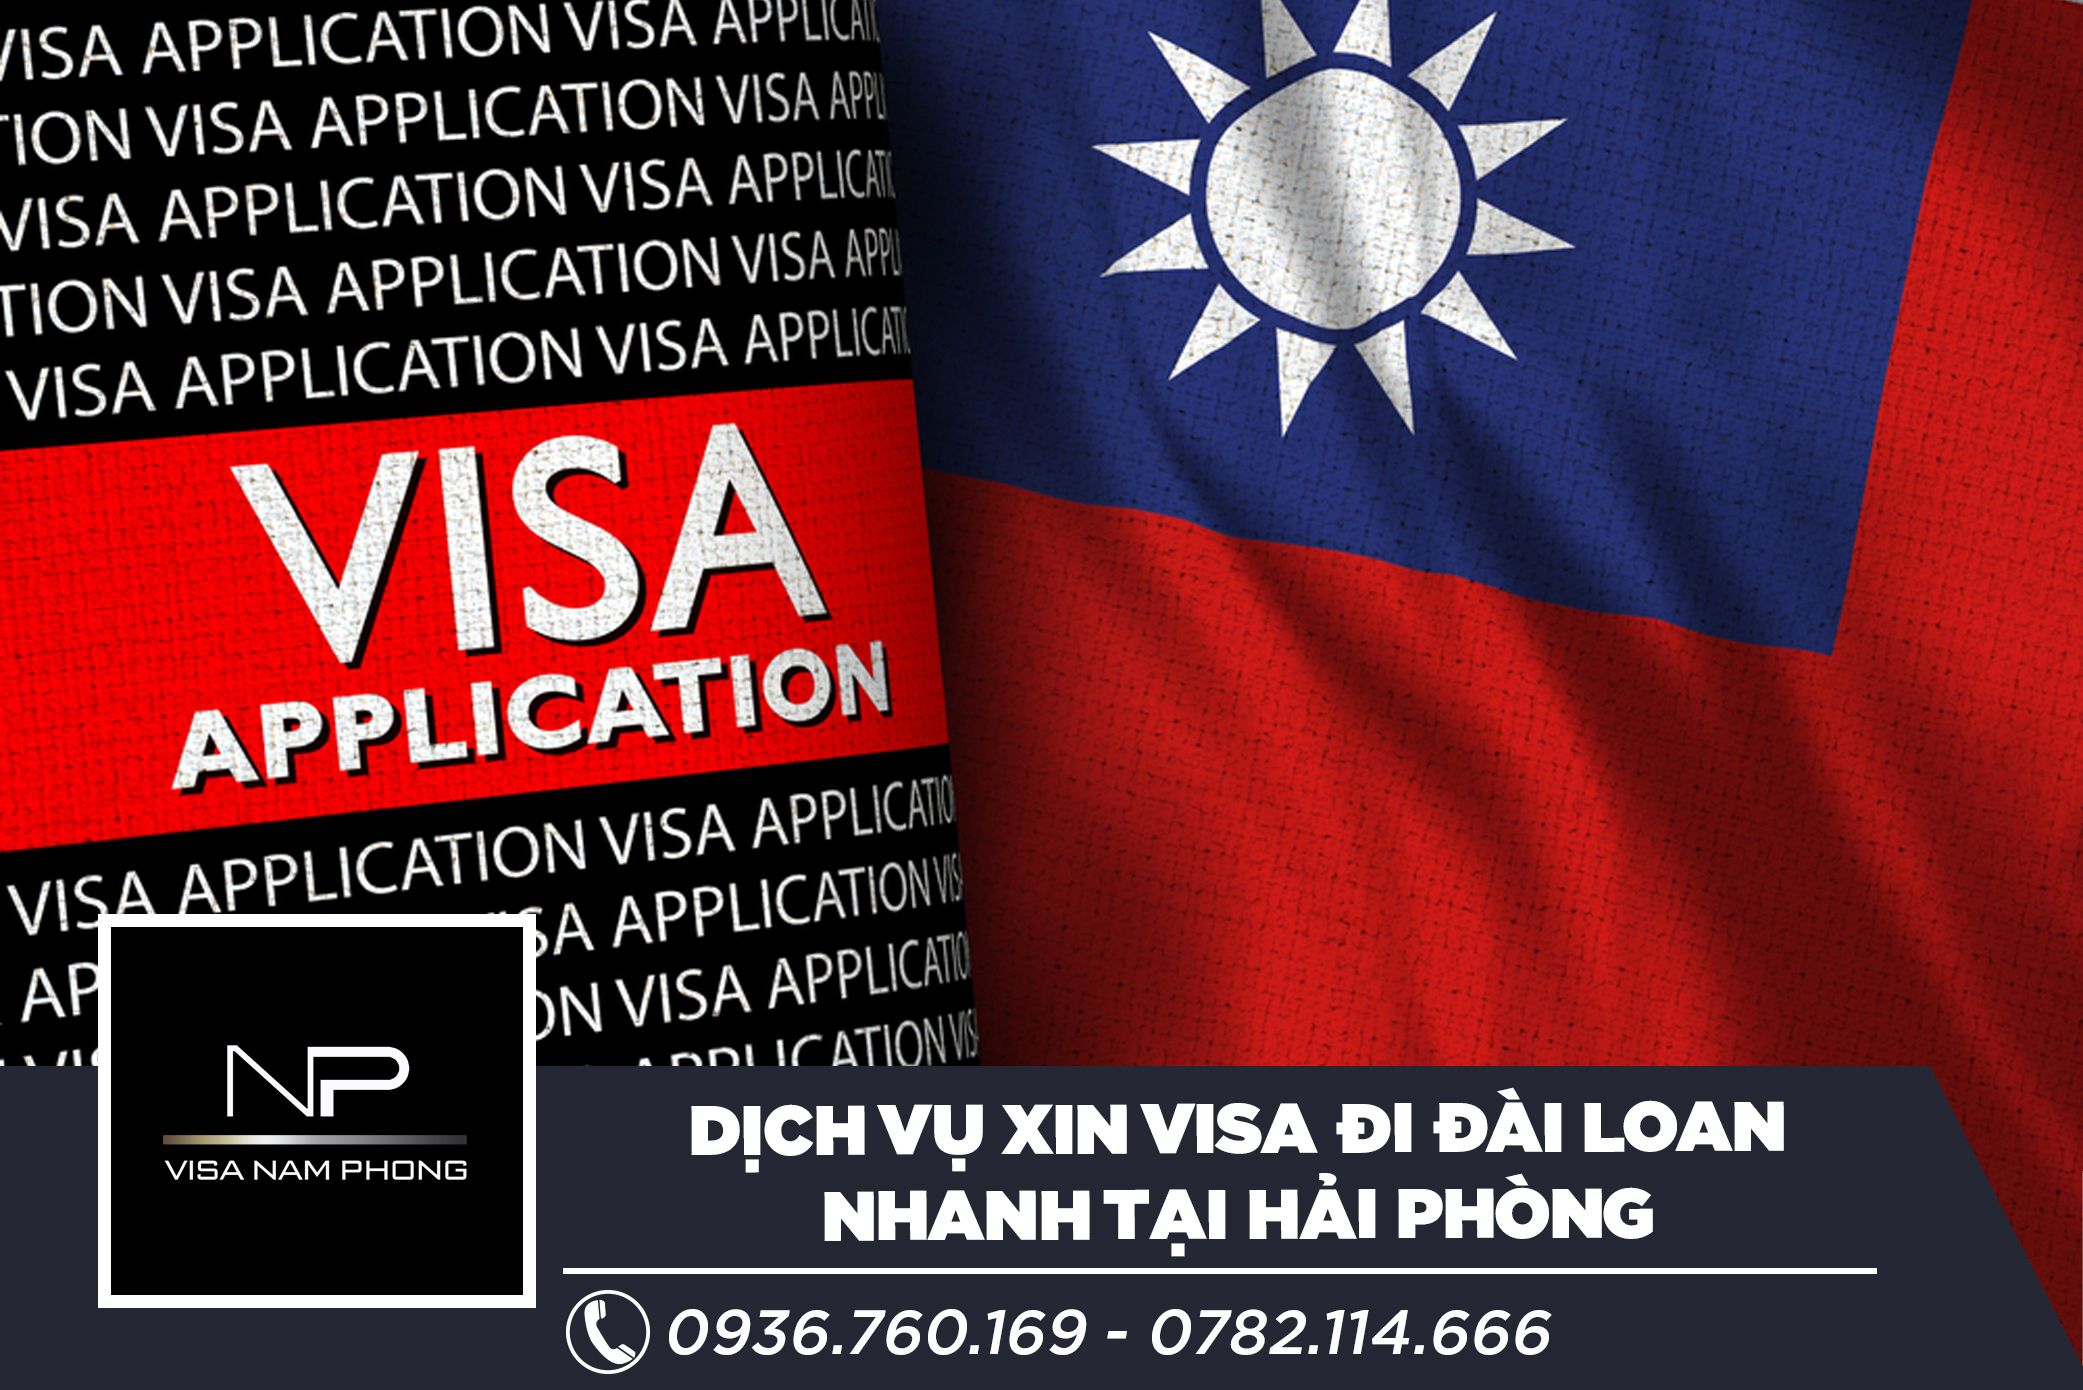 DỊch vụ xin visa đi Đài Loan nhanh tại Hải Phòng